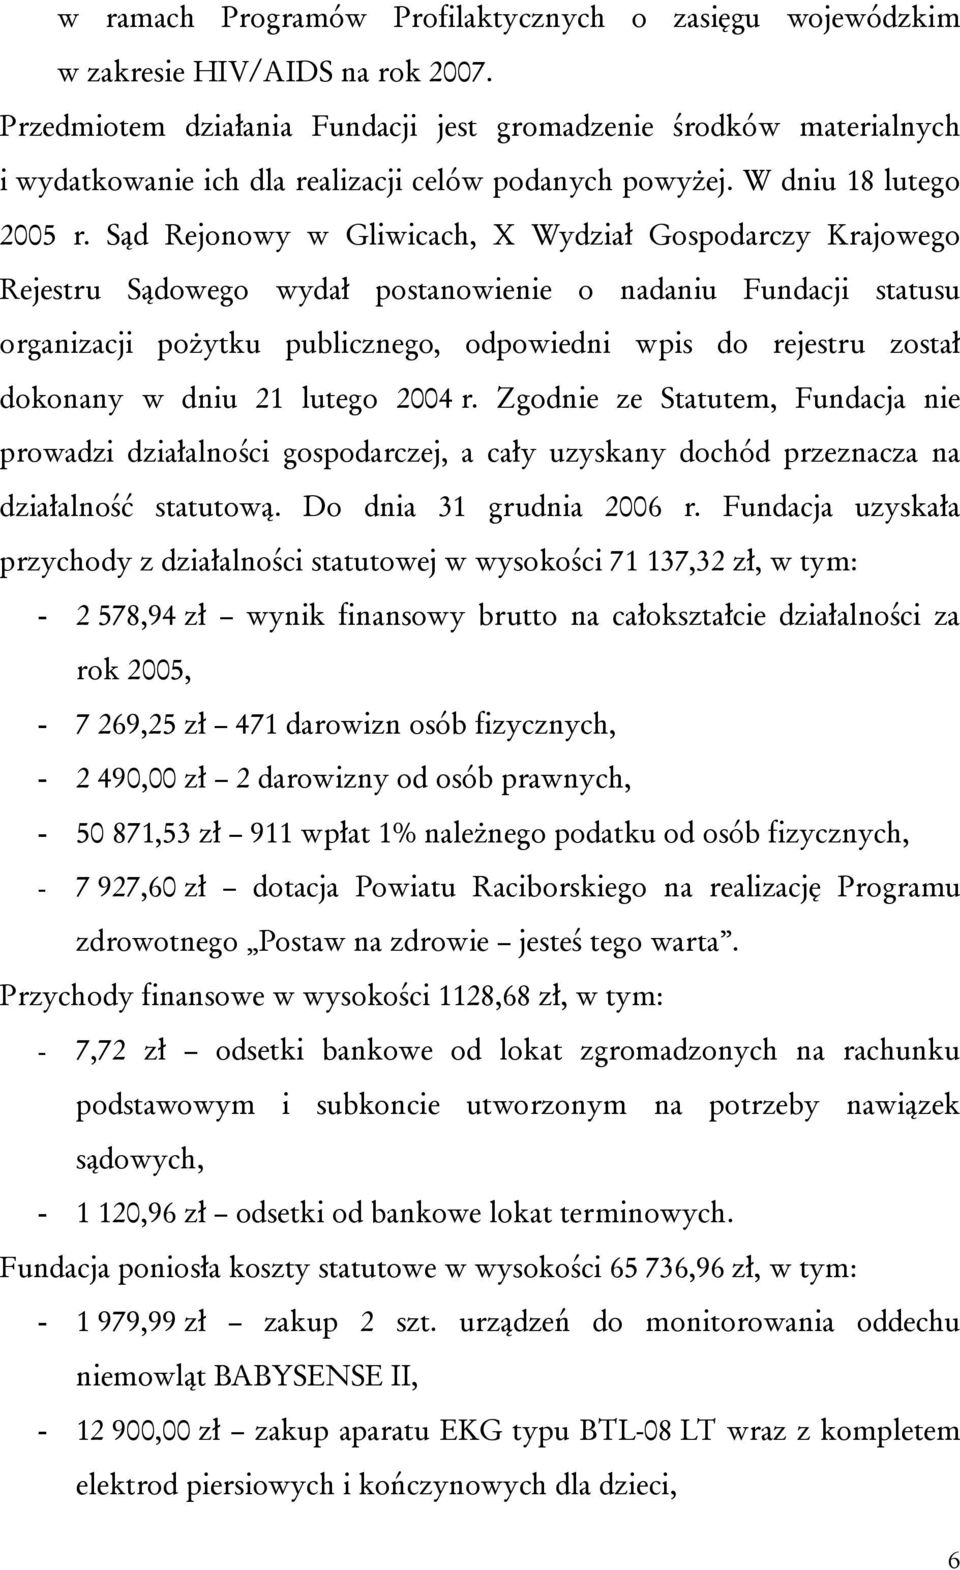 Sąd Rejonowy w Gliwicach, X Wydział Gospodarczy Krajowego Rejestru Sądowego wydał postanowienie o nadaniu Fundacji statusu organizacji pożytku publicznego, odpowiedni wpis do rejestru został dokonany